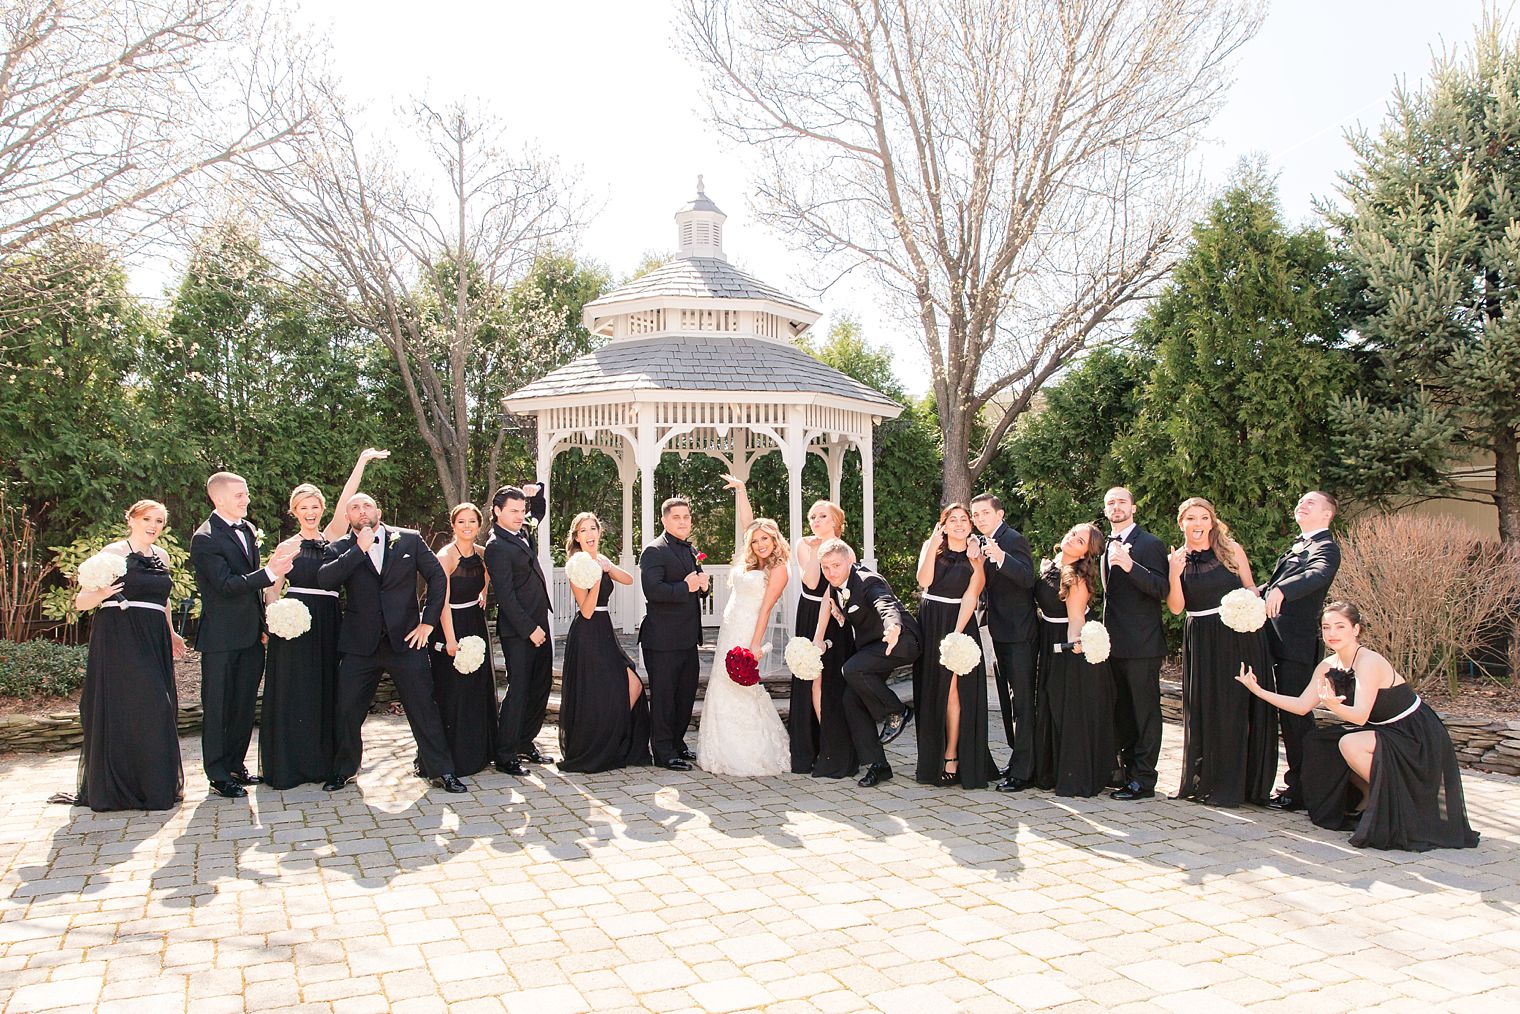 Unique bridal party photo